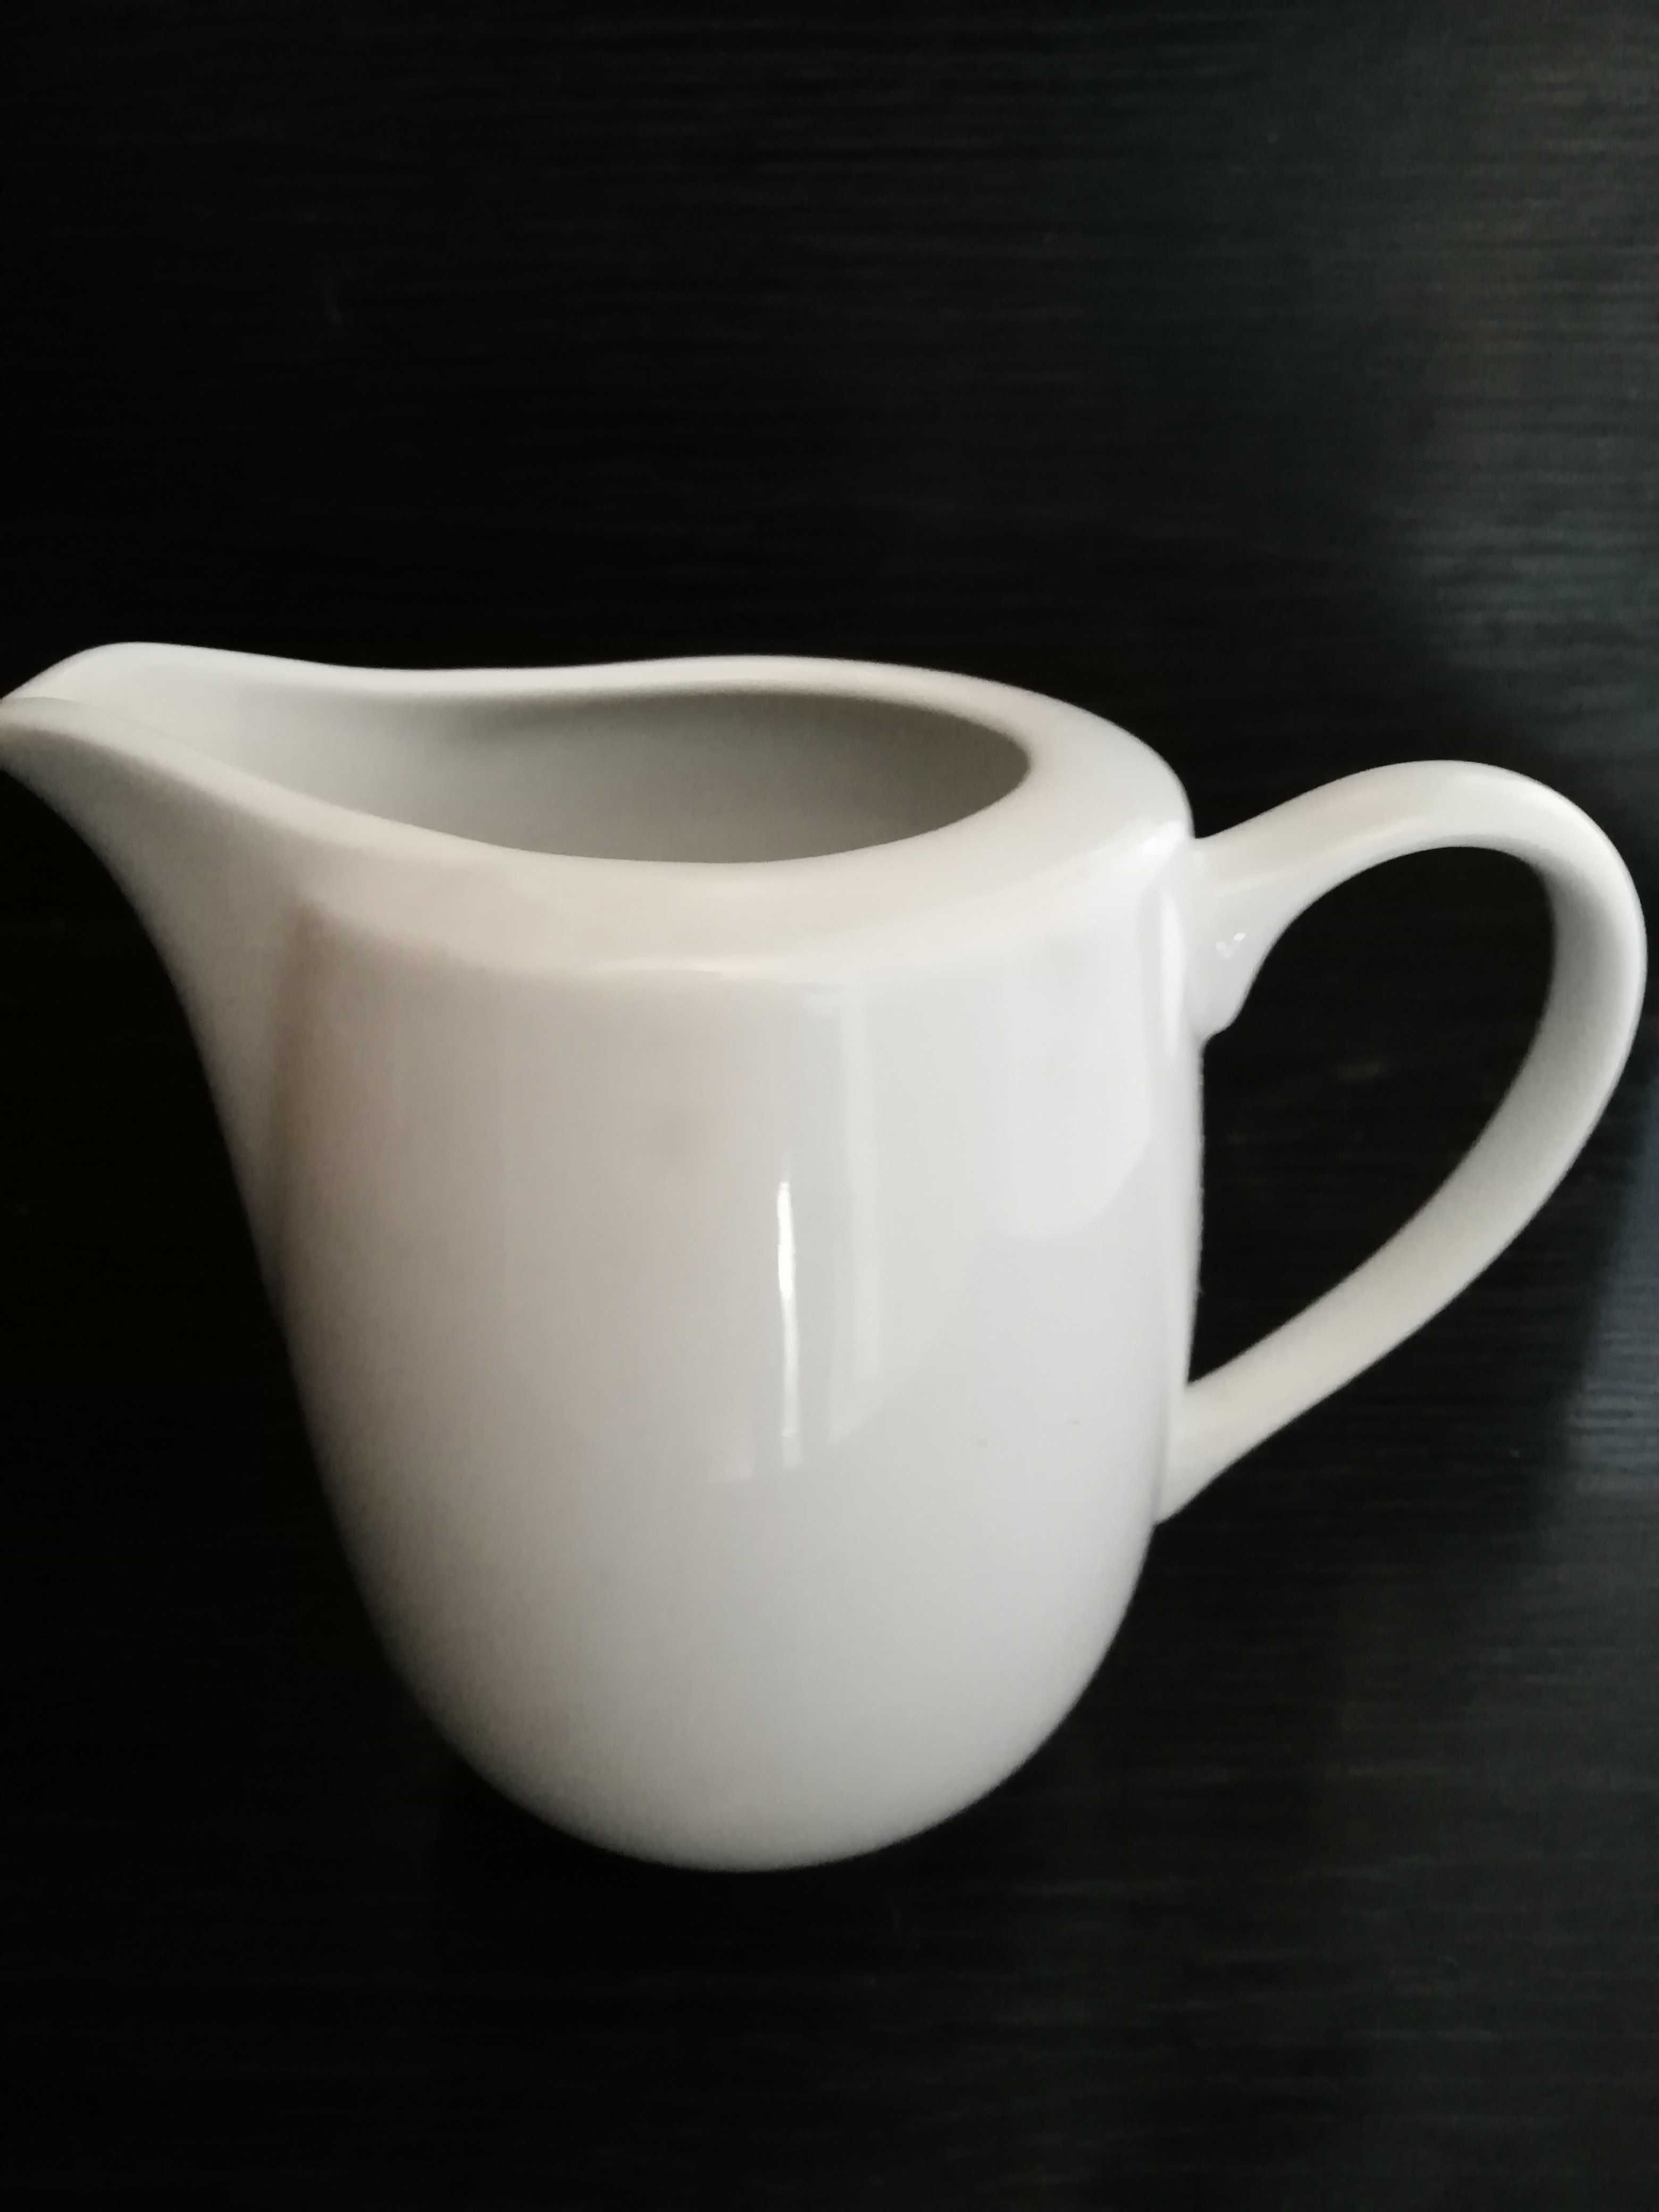 Zestaw/serwis do kawy lub herbaty. Porcelana Włocławek